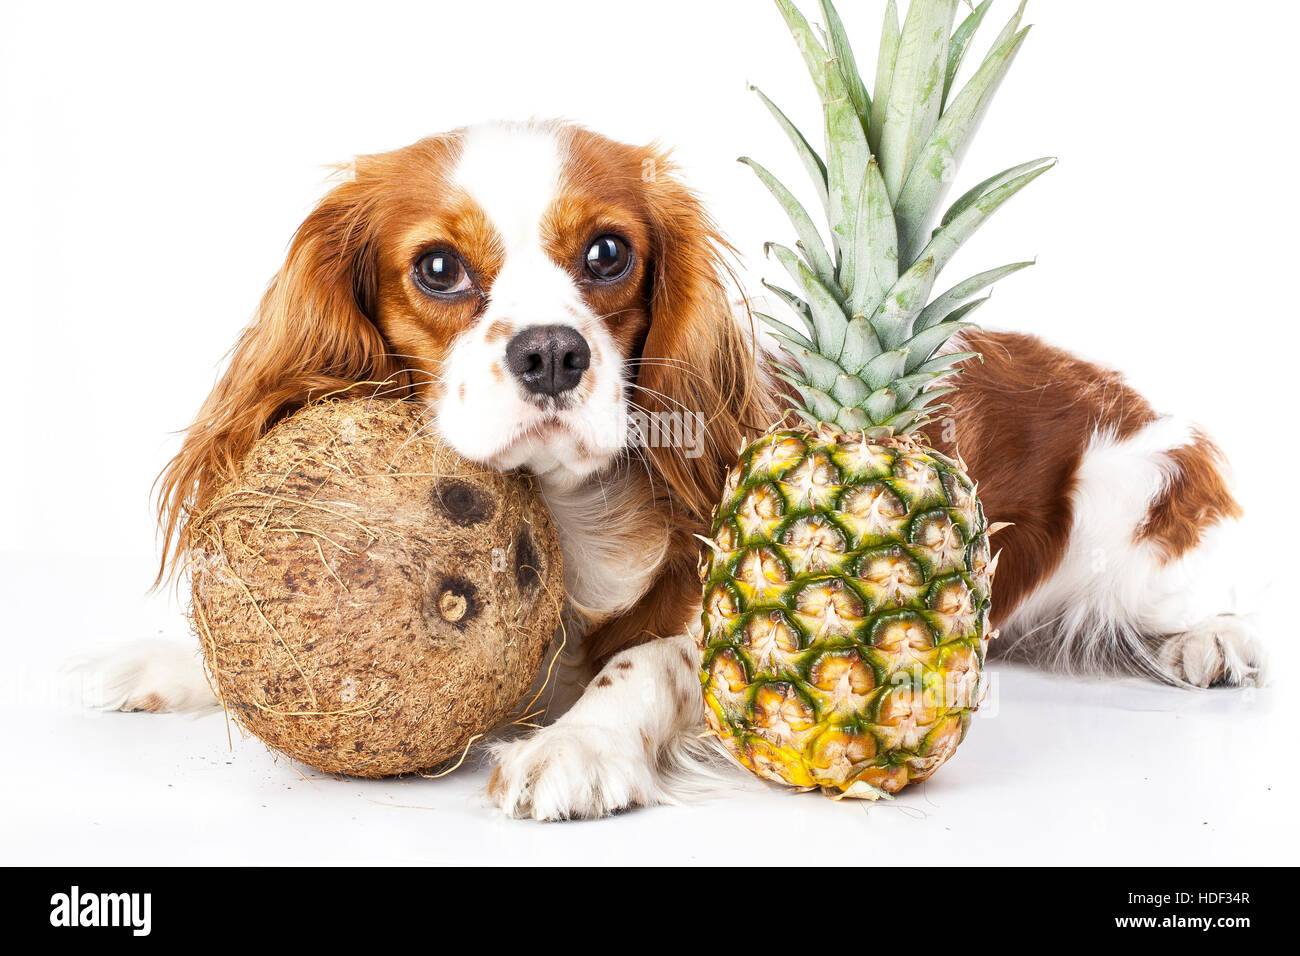 Können Hunde essen sie Obst Abbildung. tropische Früchte und Cavalier King  Charles Spaniel hund Dog mit Obst essen. dog Health Care Stockfotografie -  Alamy